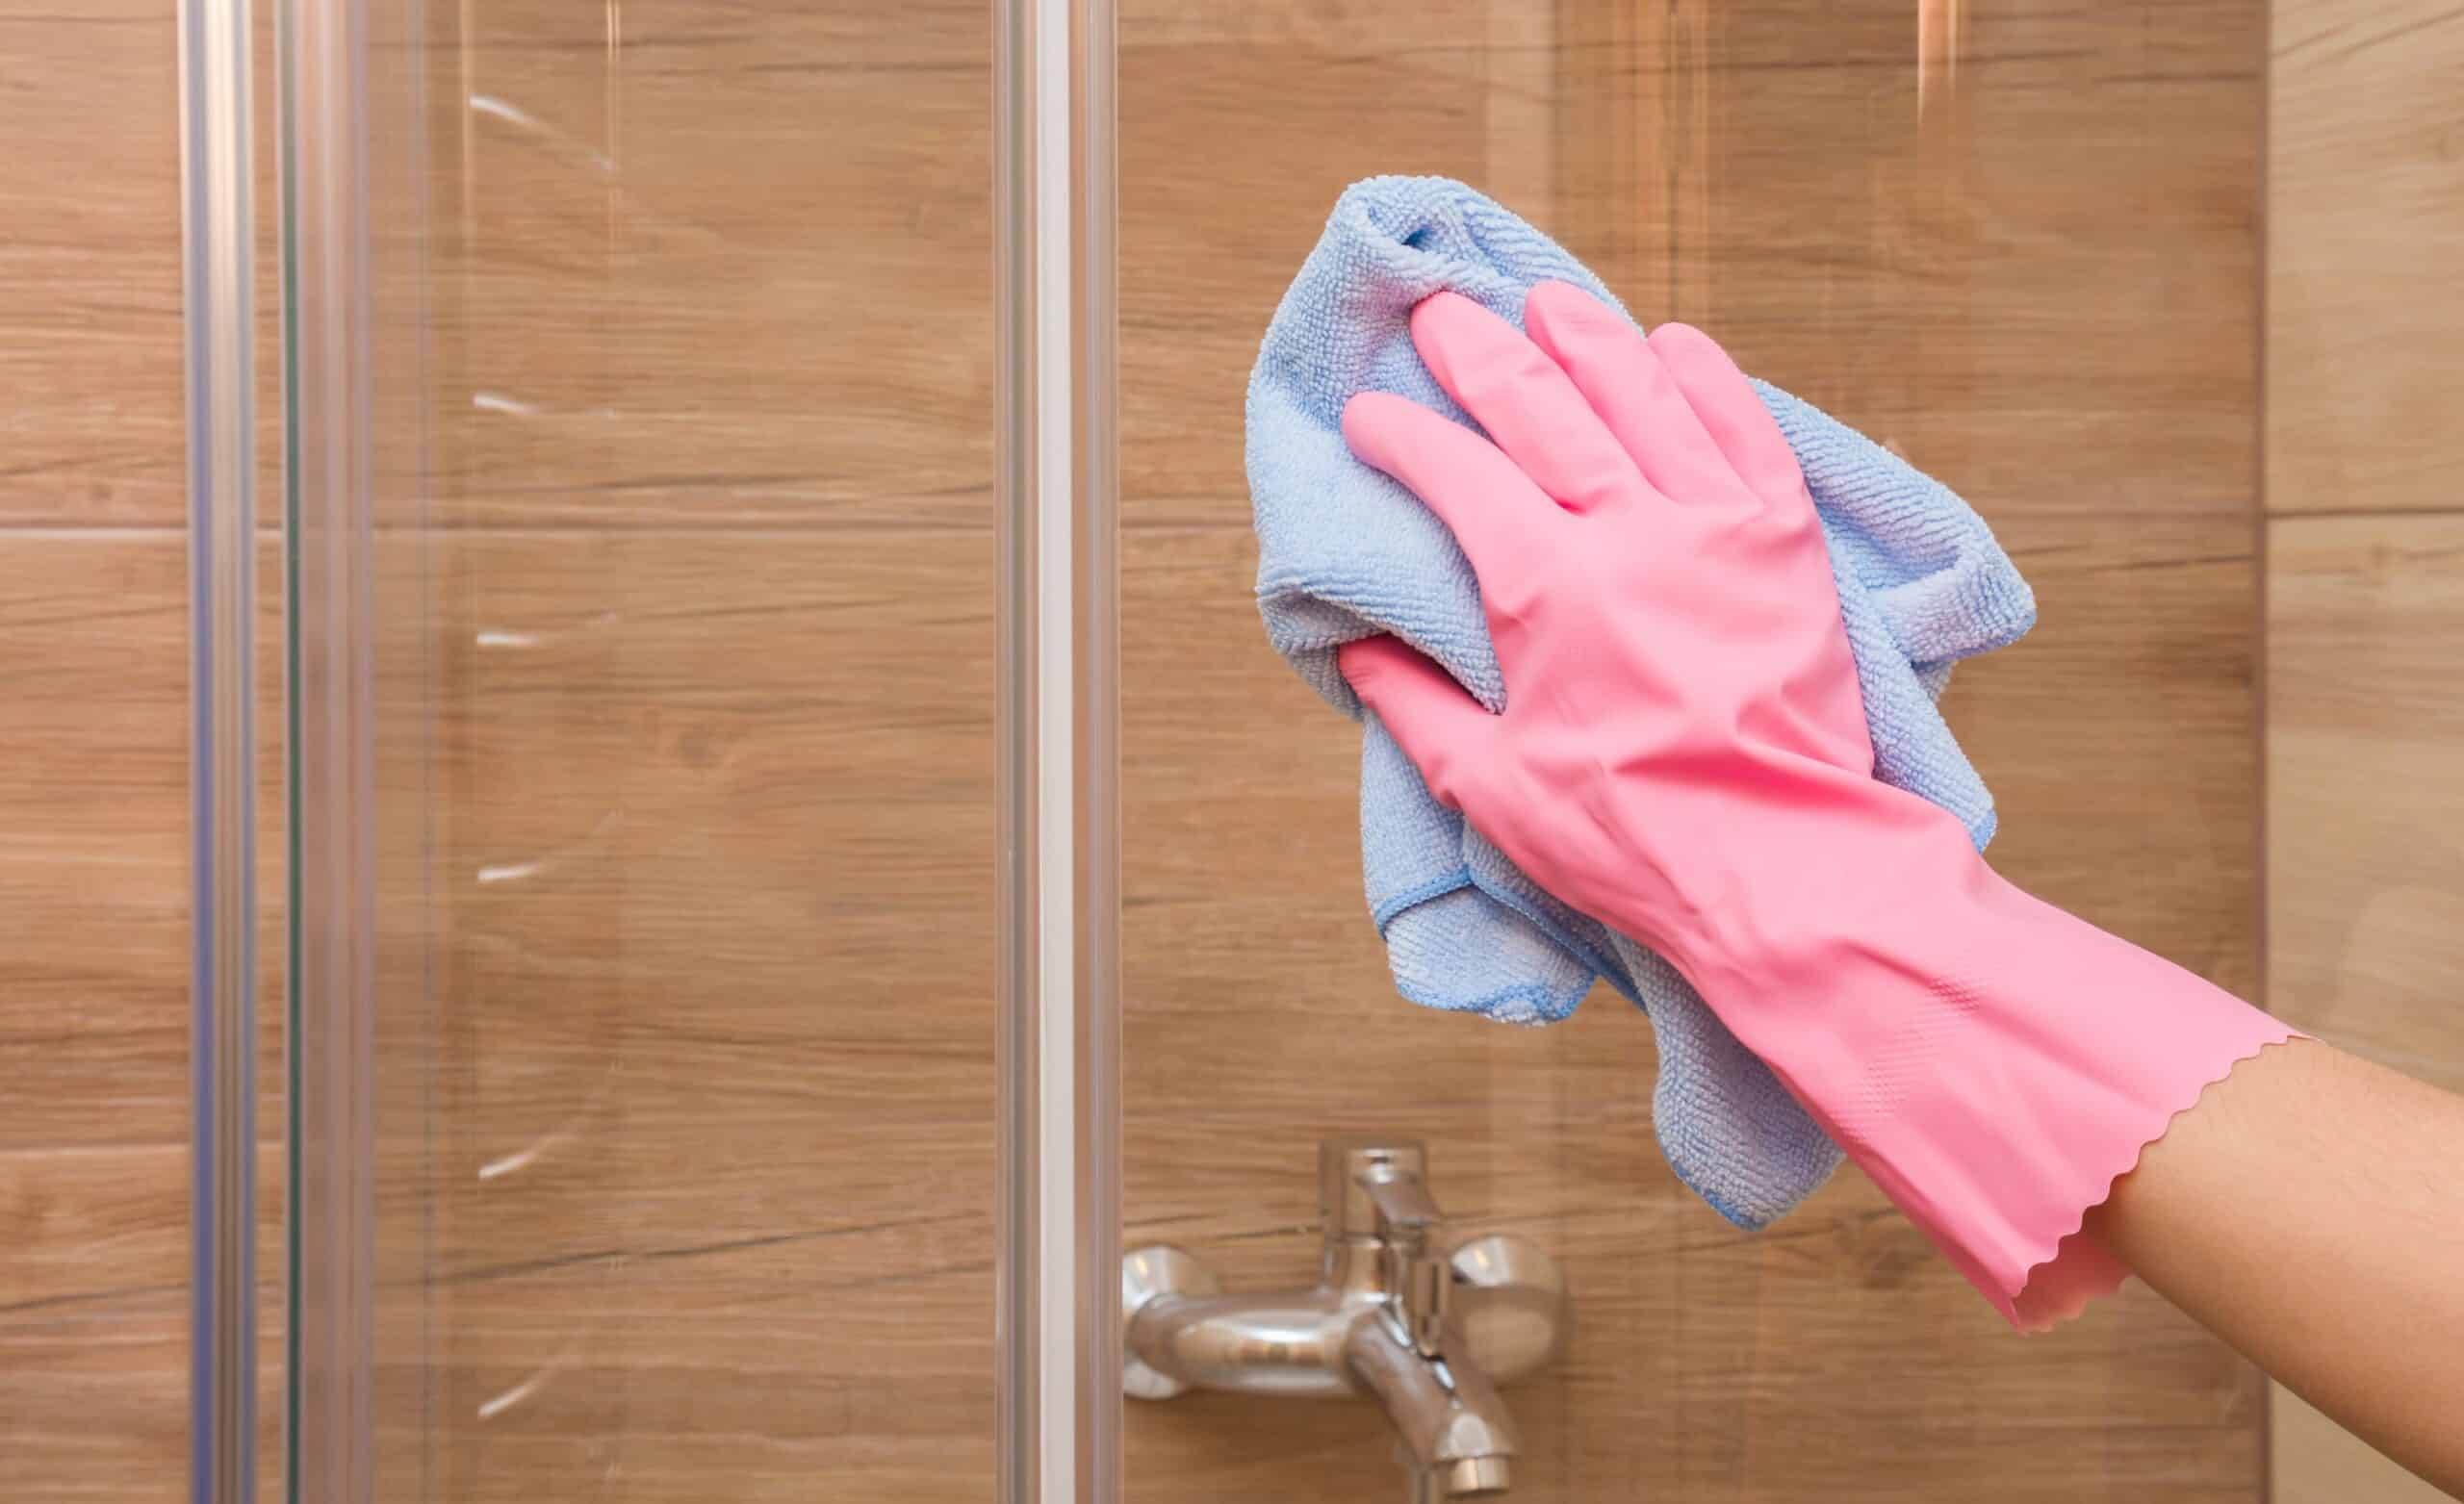 3 Tips To Keep Your Shower Door Cleaner 